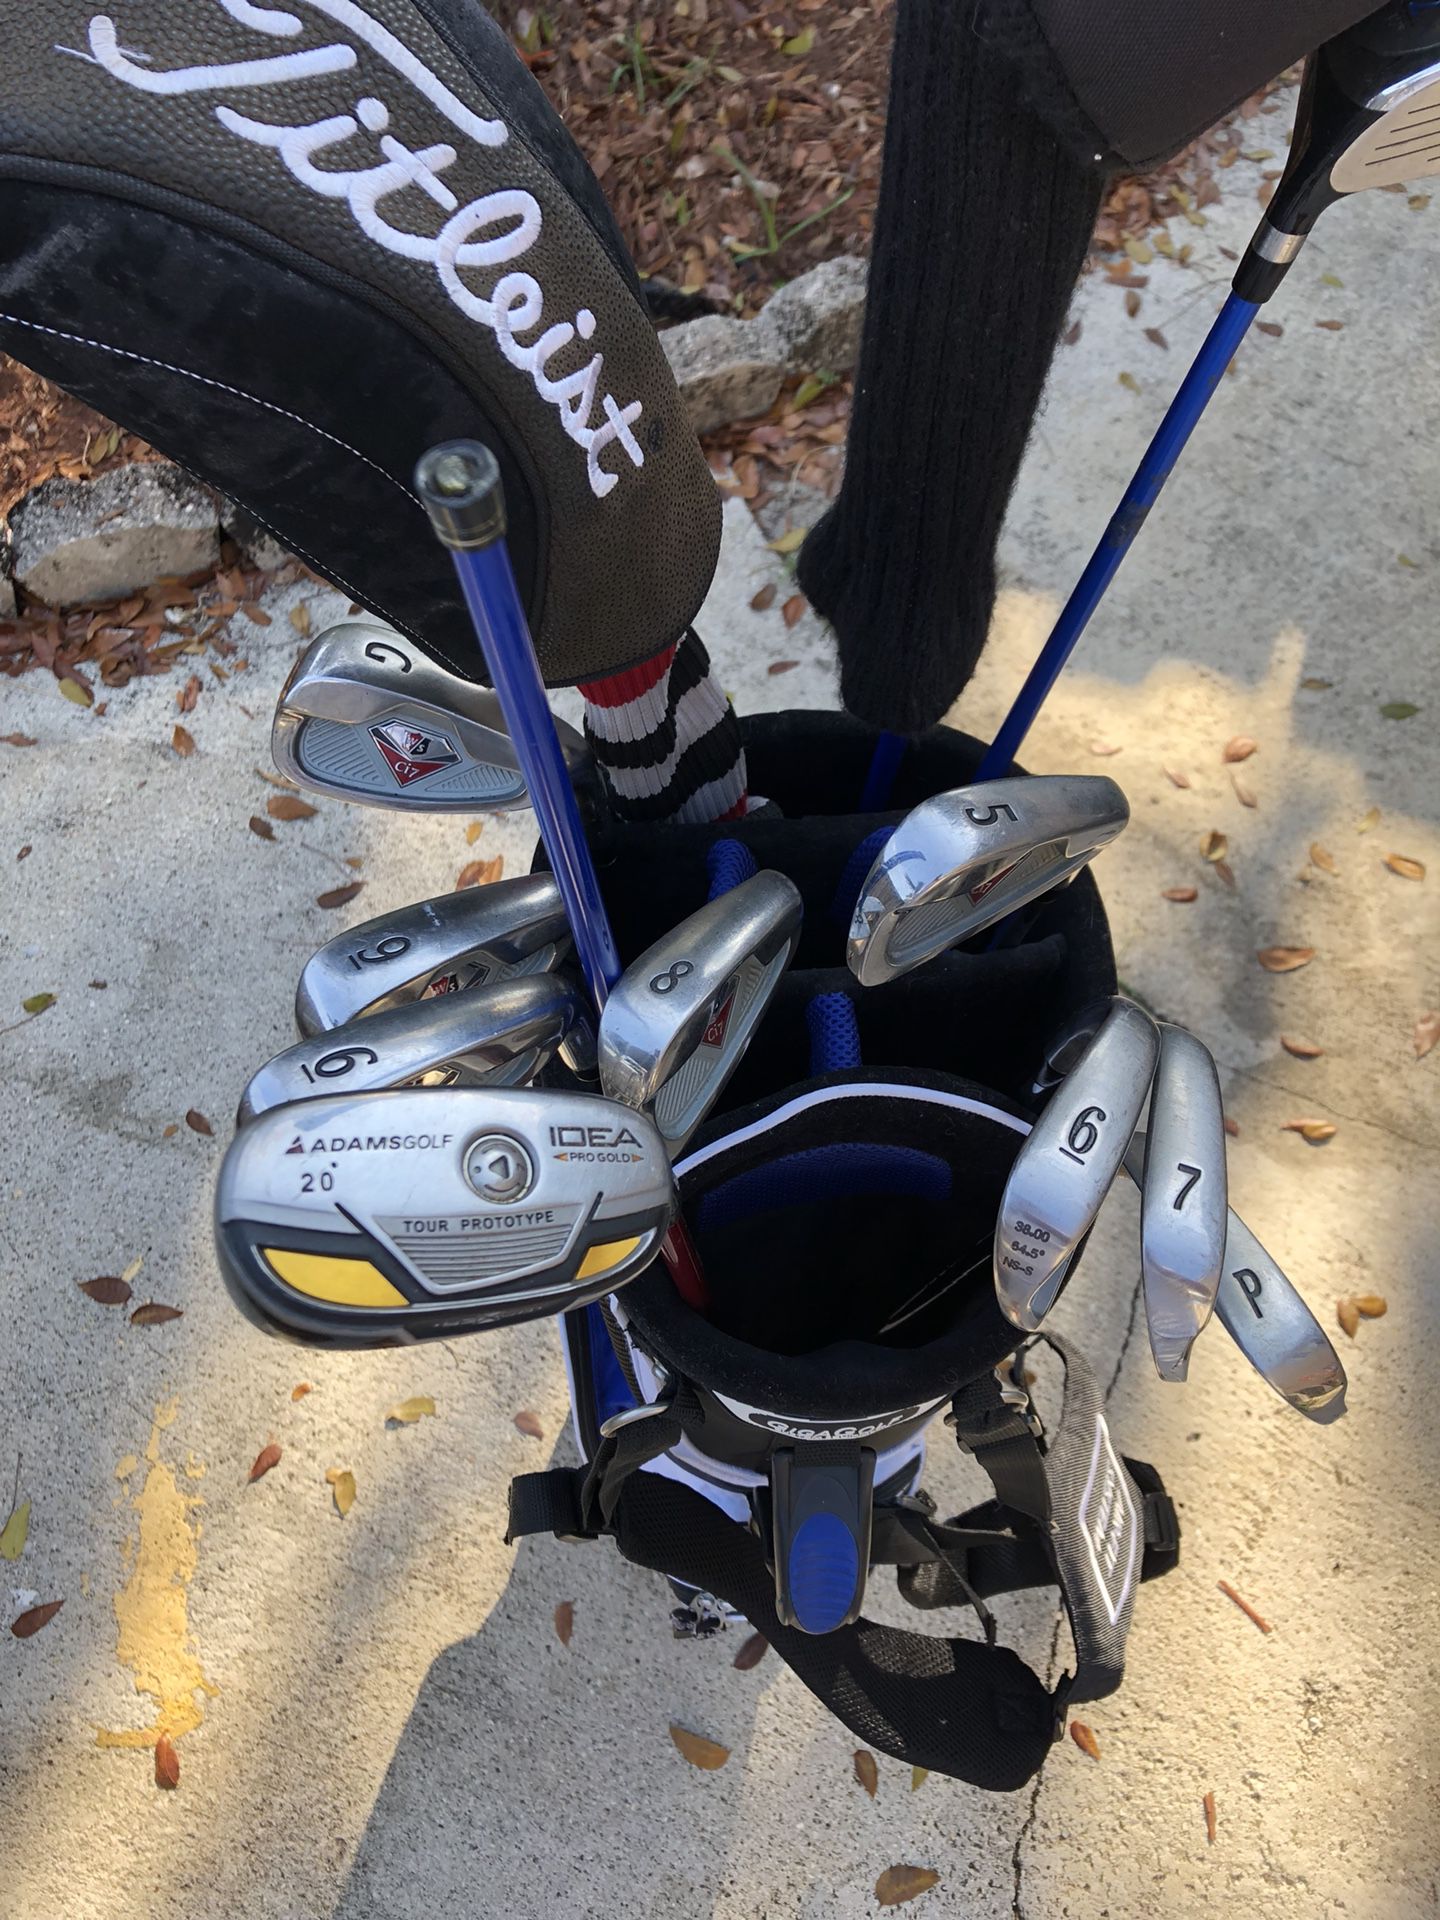 Golf club set with Giga Golf club bag! for Sale in Miami, FL - OfferUp